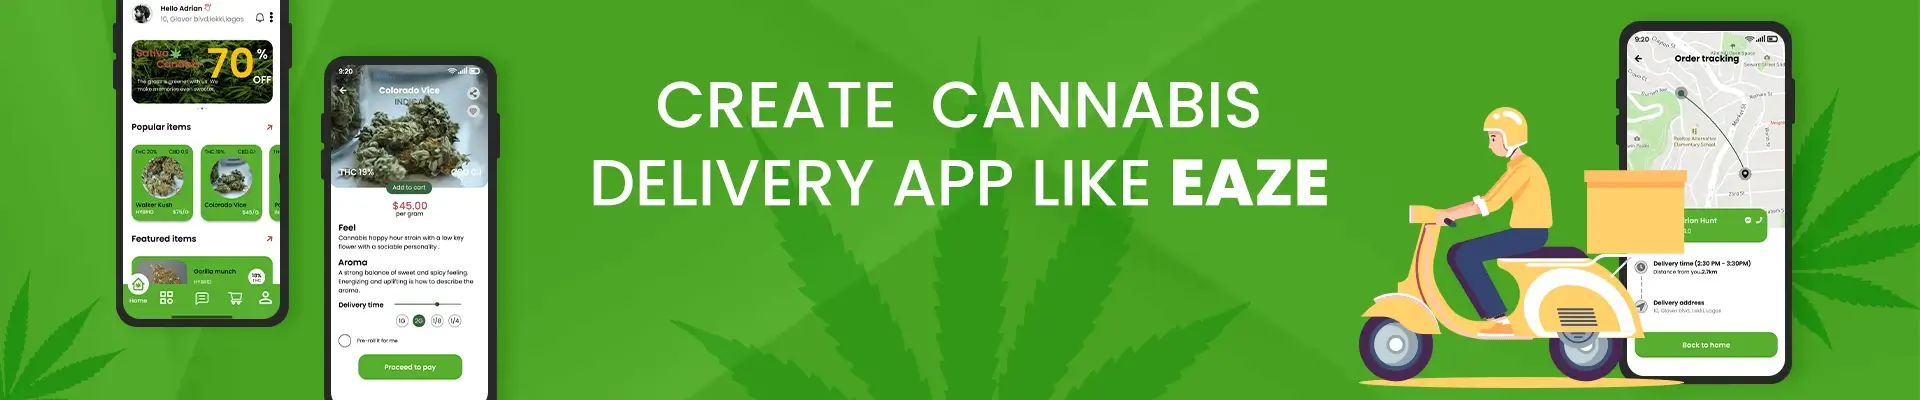 How To Create A Cannabis Delivery App Like Eaze?